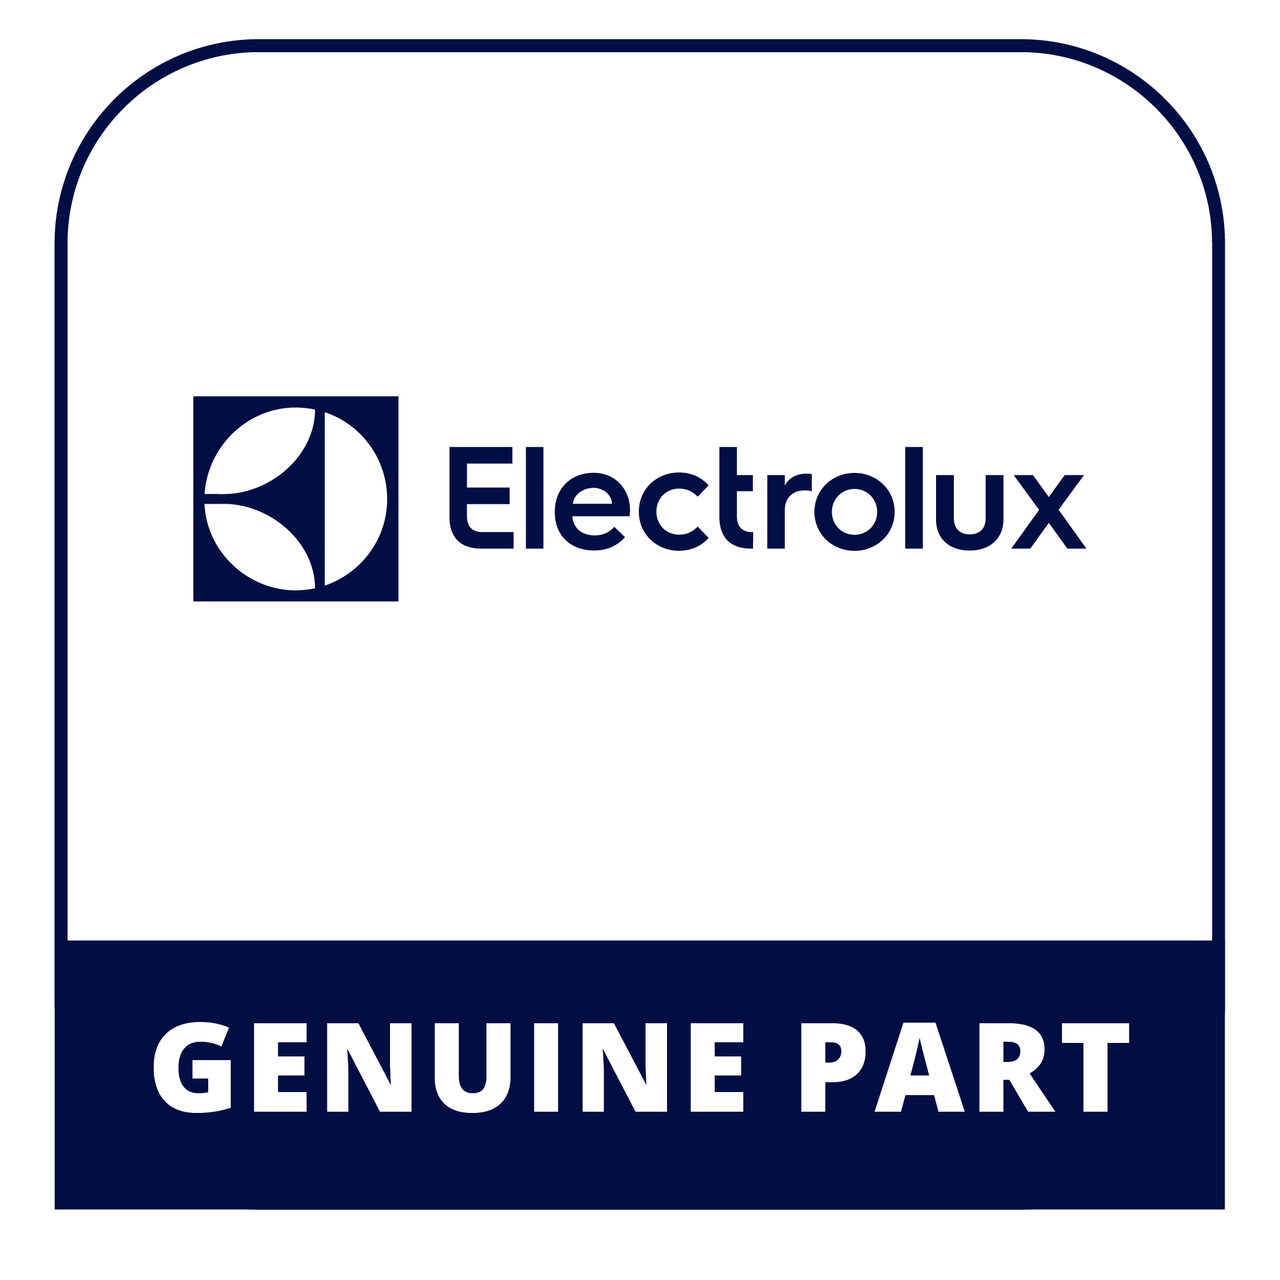 Frigidaire - Electrolux 240367602 Trim-Shelf - Genuine Electrolux Part